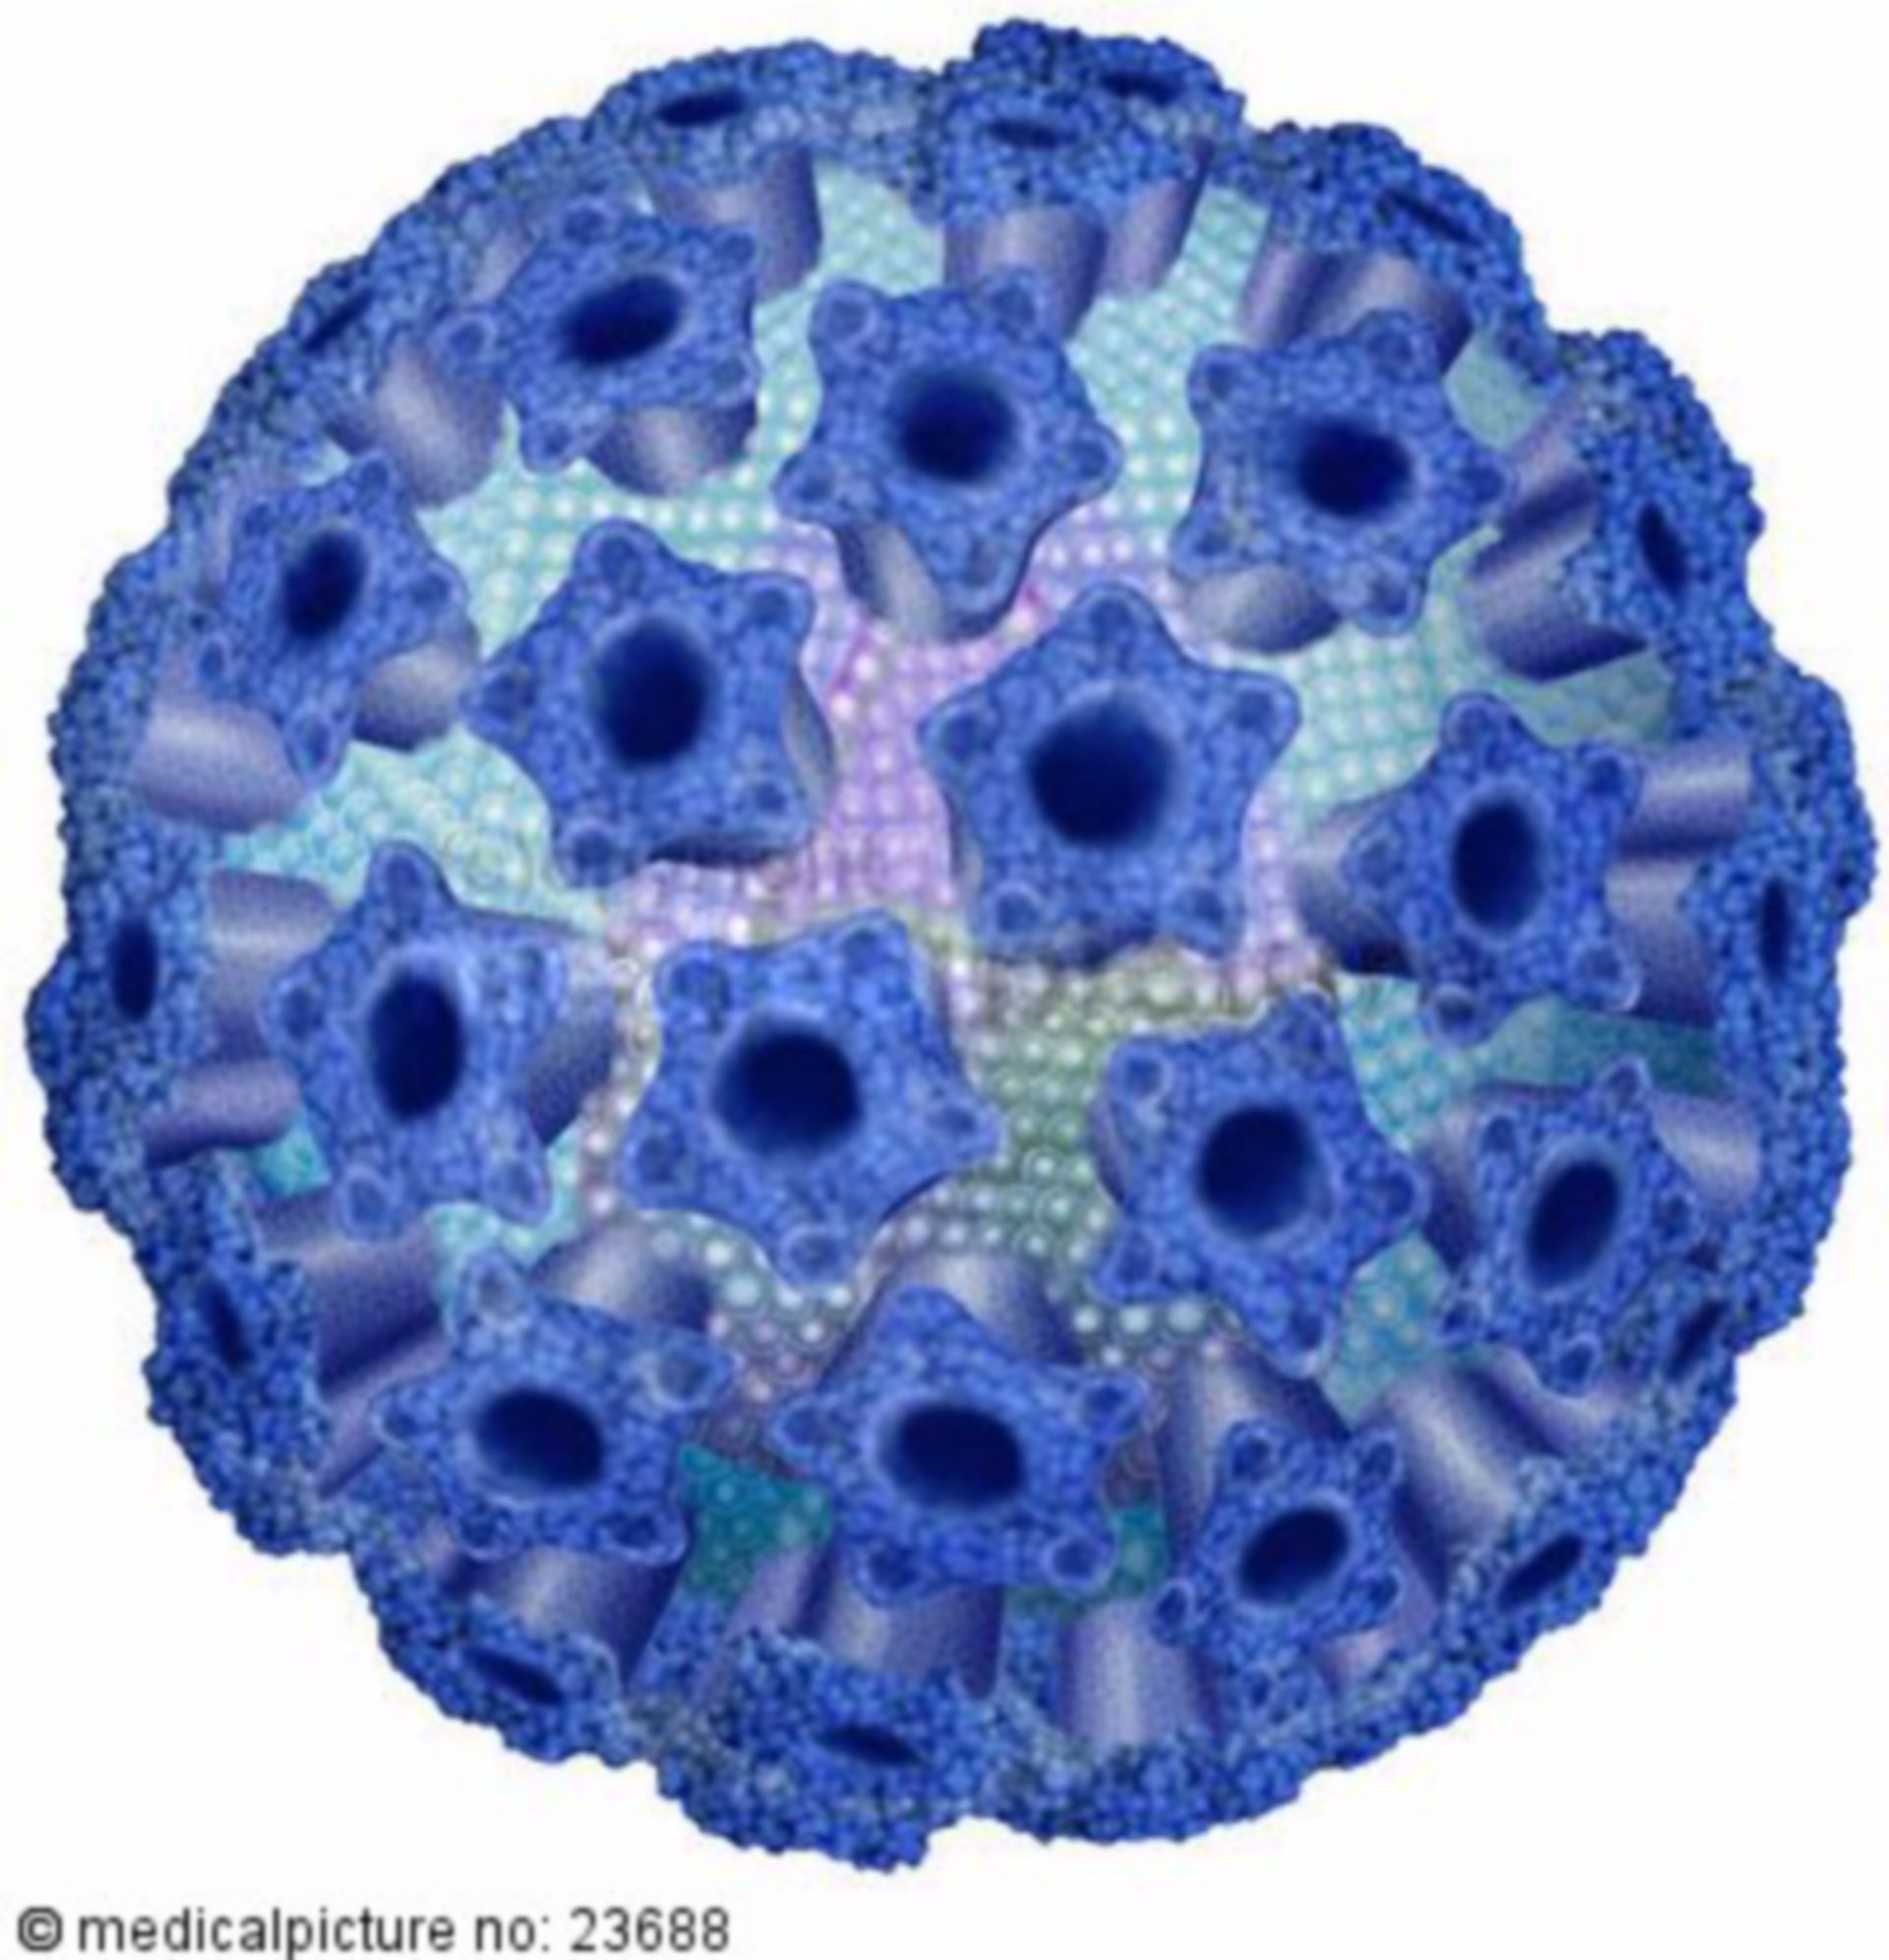 Human Papilloma Virus, HPV